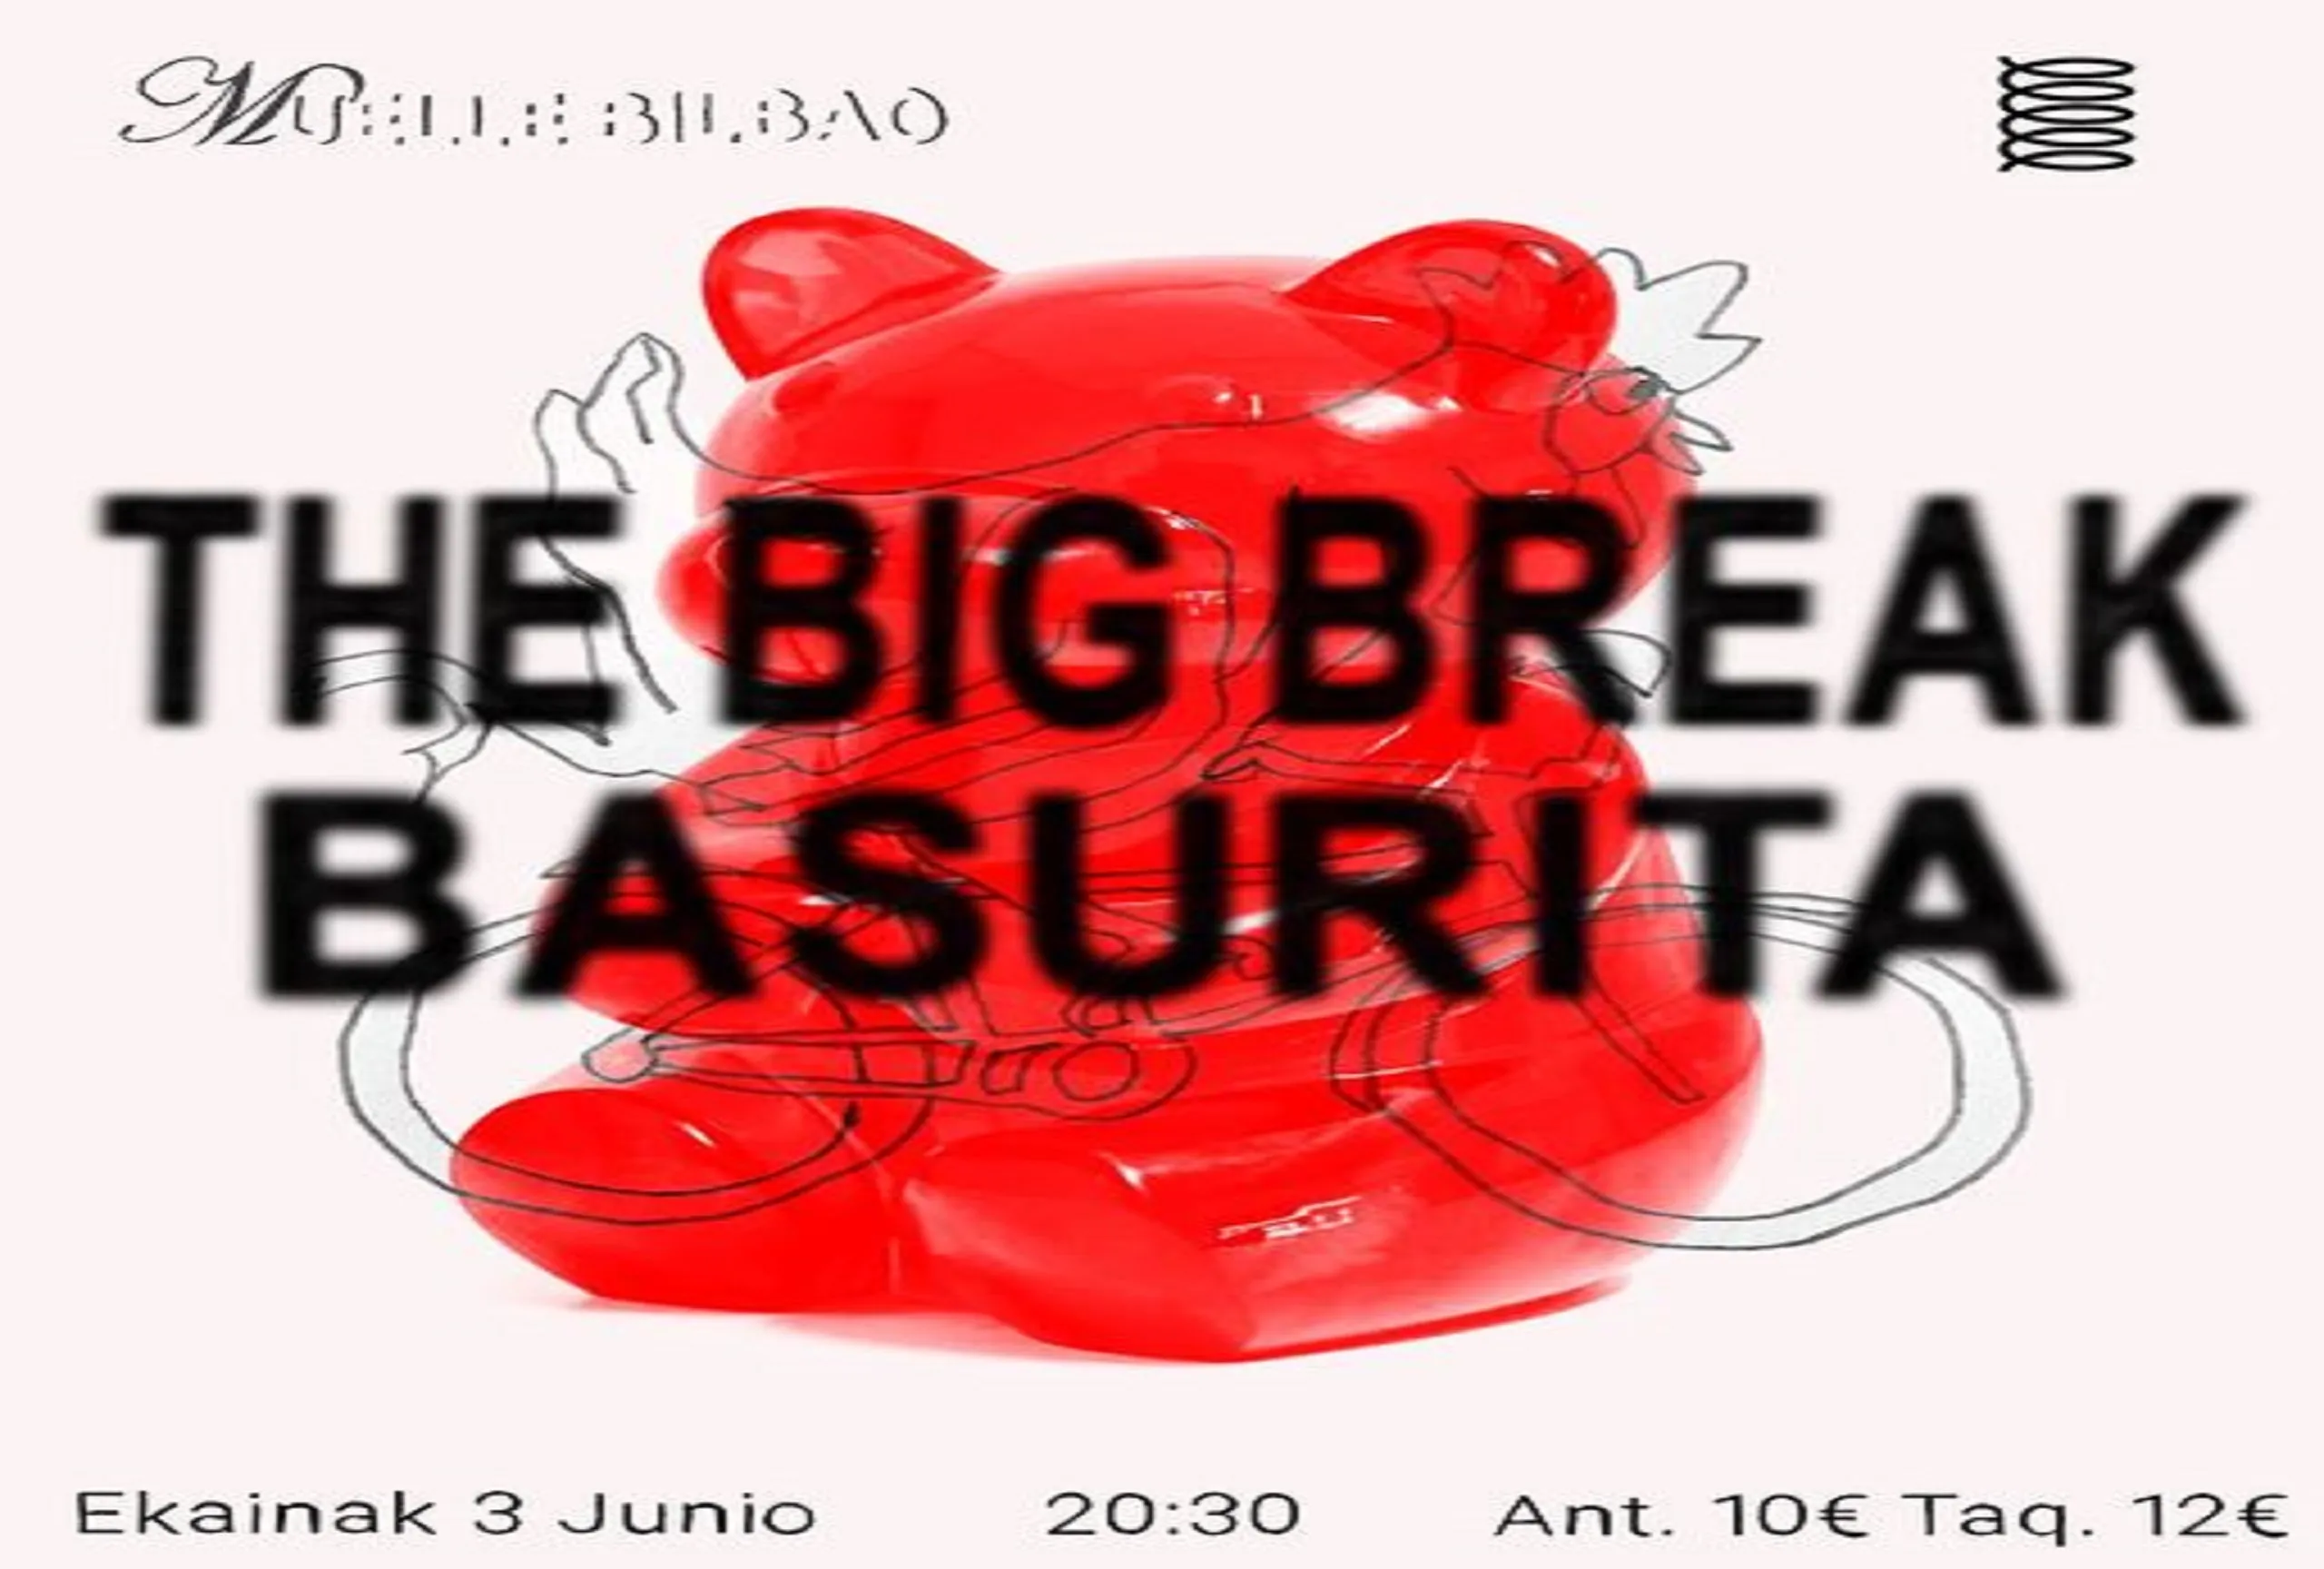 THE BIG BREAK + BASURITA